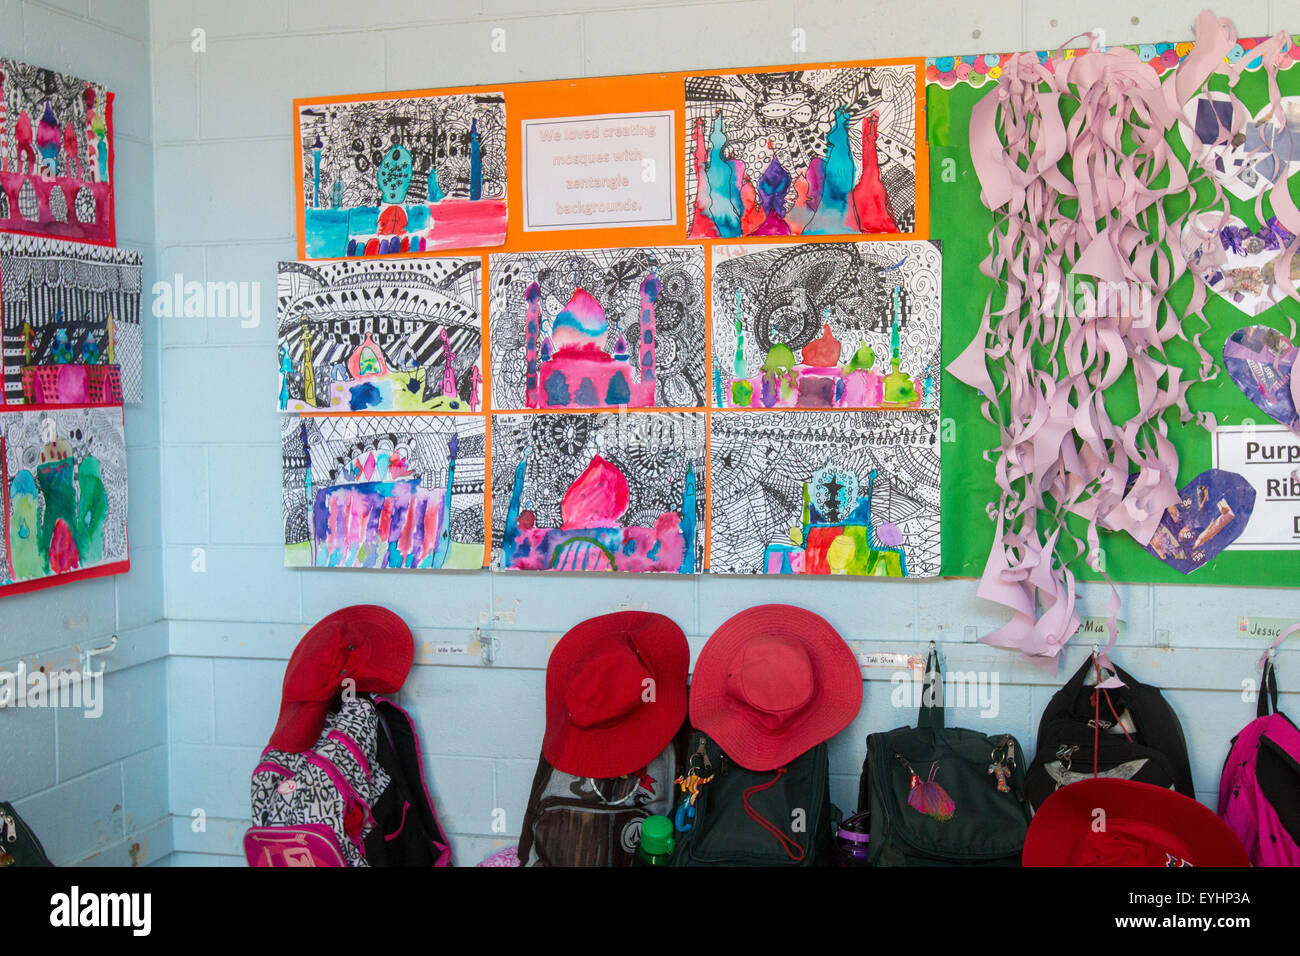 Garderobe für die australische Grundschule, rote Hüte und Schultaschen in einem Umkleideraum für die Grundschule in Sydney, NSW, Australien mit Kinderkunst Stockfoto